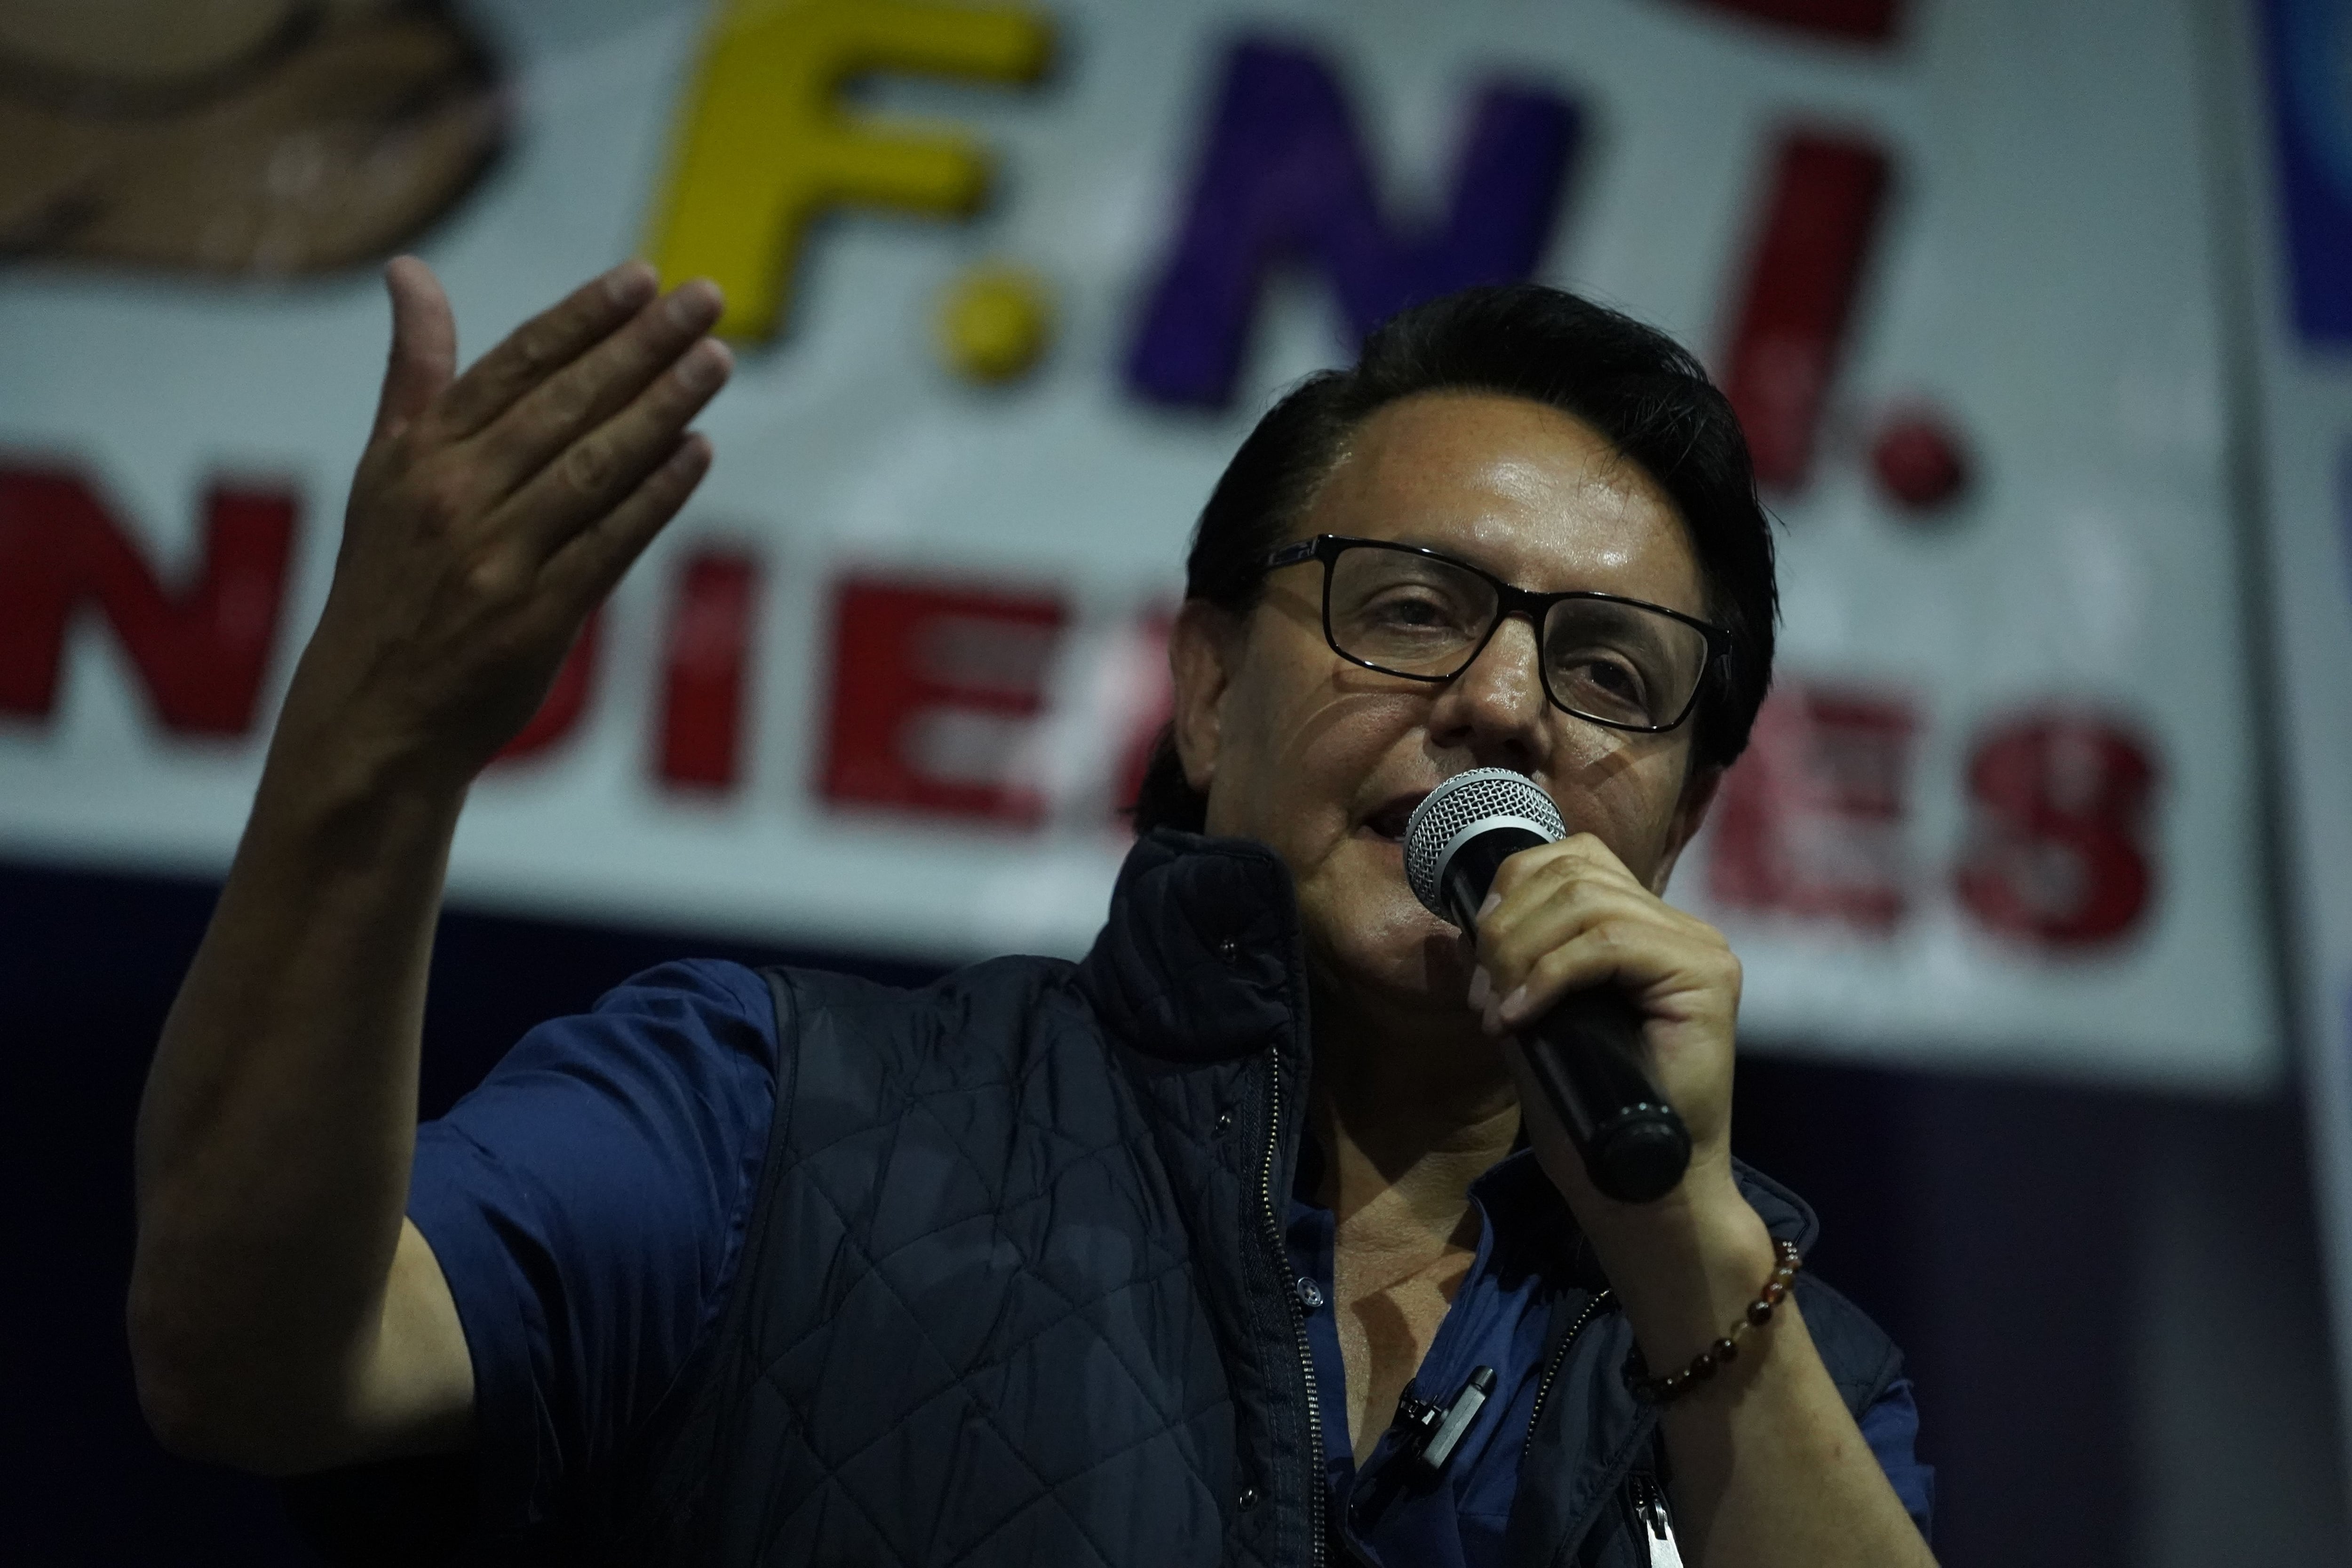 La desgarradora despedida de la madre de Fernando Villavicencio: “Dejó atrás un legado de lucha y de transparencia” - Infobae